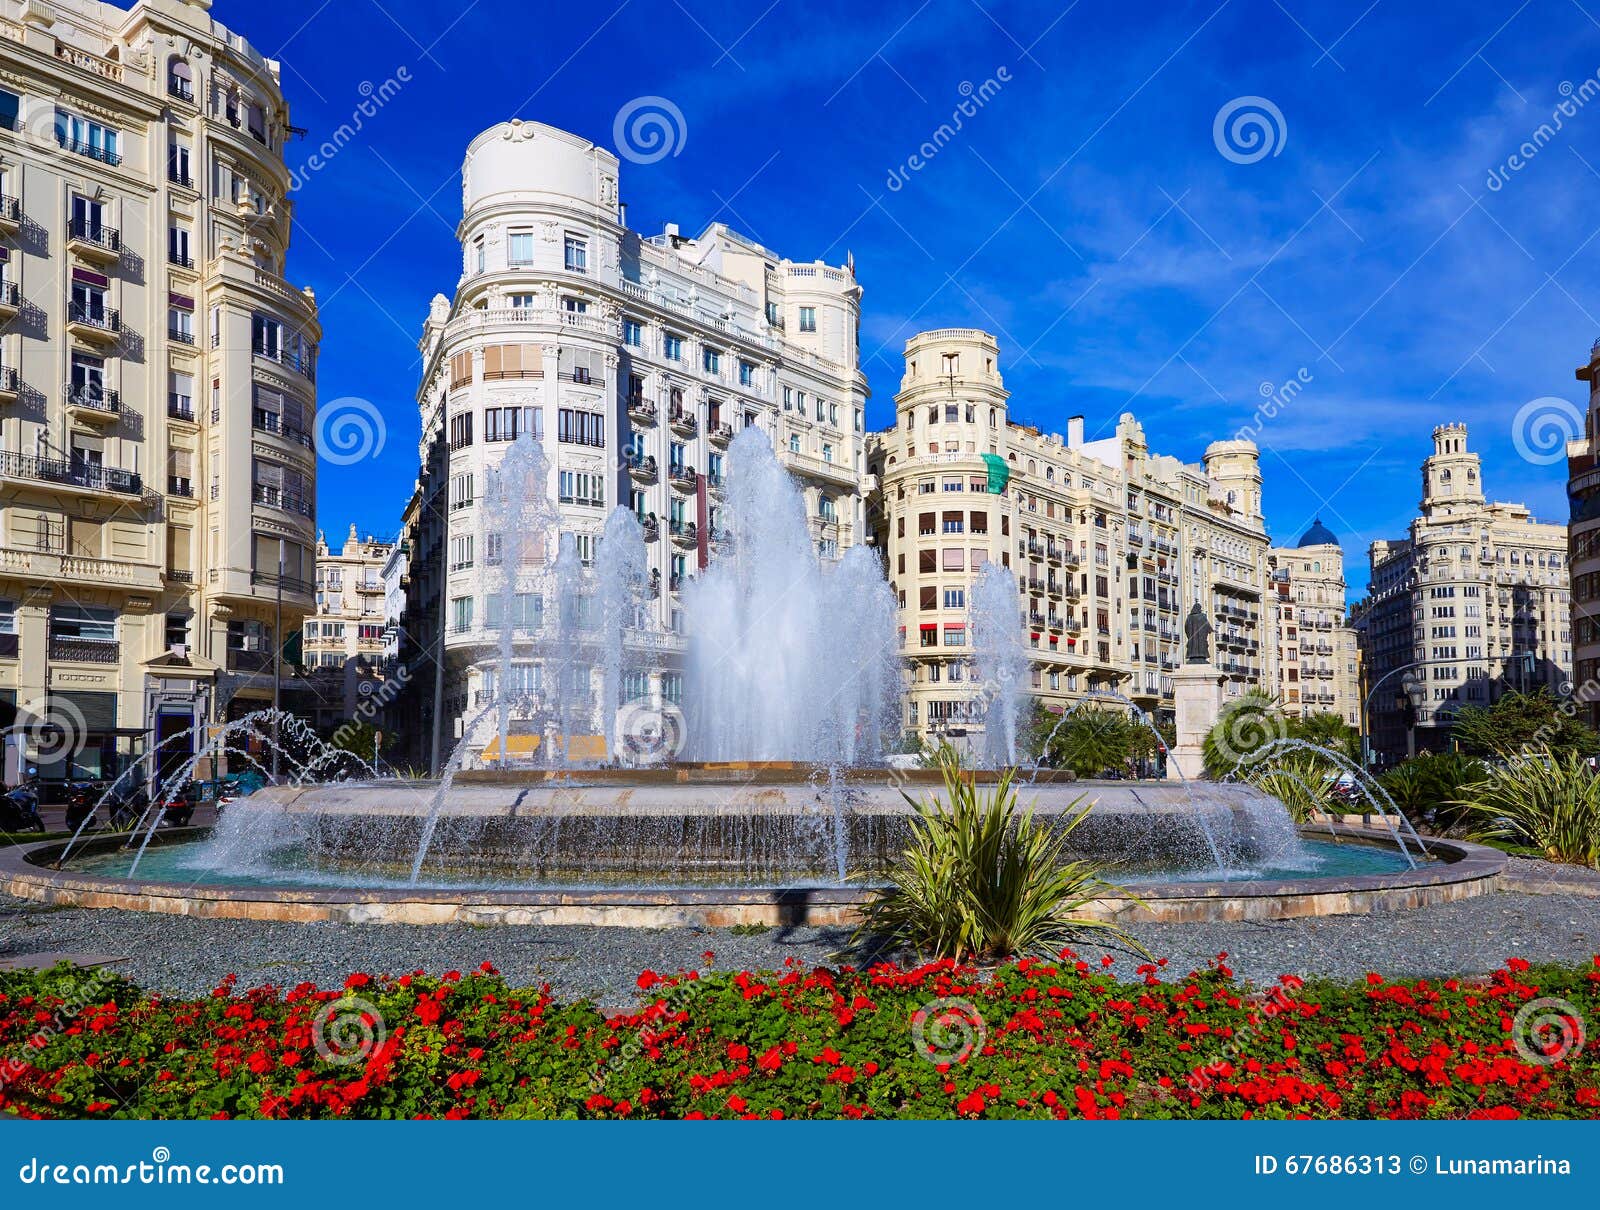 valencia city ayuntamiento square plaza fountain